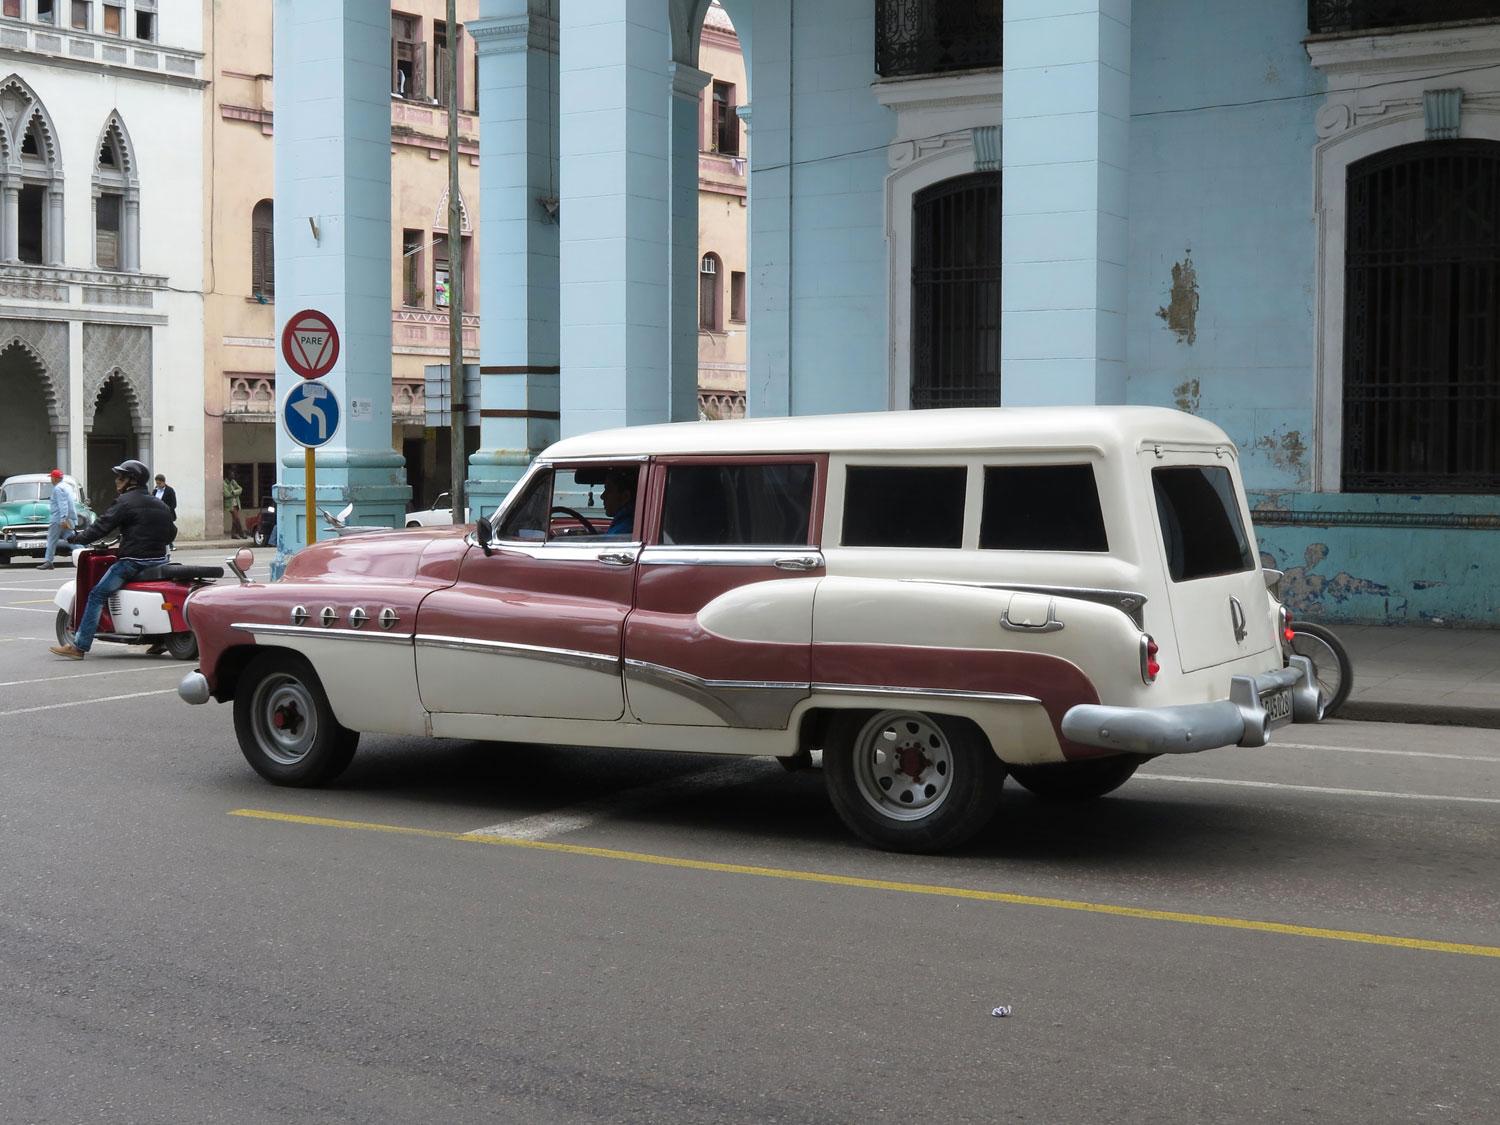 Vilken skönhet! En Buick Roadmaster från 1951 som väl började sitt liv som en fyrdörrars sedan. Och sen blev konverterad till likbil, eller bara rymlig persontransport. Kylarprydnaden var elegant redan i original, men kanske inte så här stor, de fyra lufthålen på framskärmarna, kromdekorationen längs sidan och den ovanliga dekorationen under tanklocket är däremot original, ovanligt på Kuba. Det fanns också en Roadmaster Estate Wagon, som kan ha inspirerat den lokale karossmakaren. Den var mer elegant, hade en del träinläggningar (Woodie) och tvådelad baklucka. Men samma bakre kofångare och bakljus.